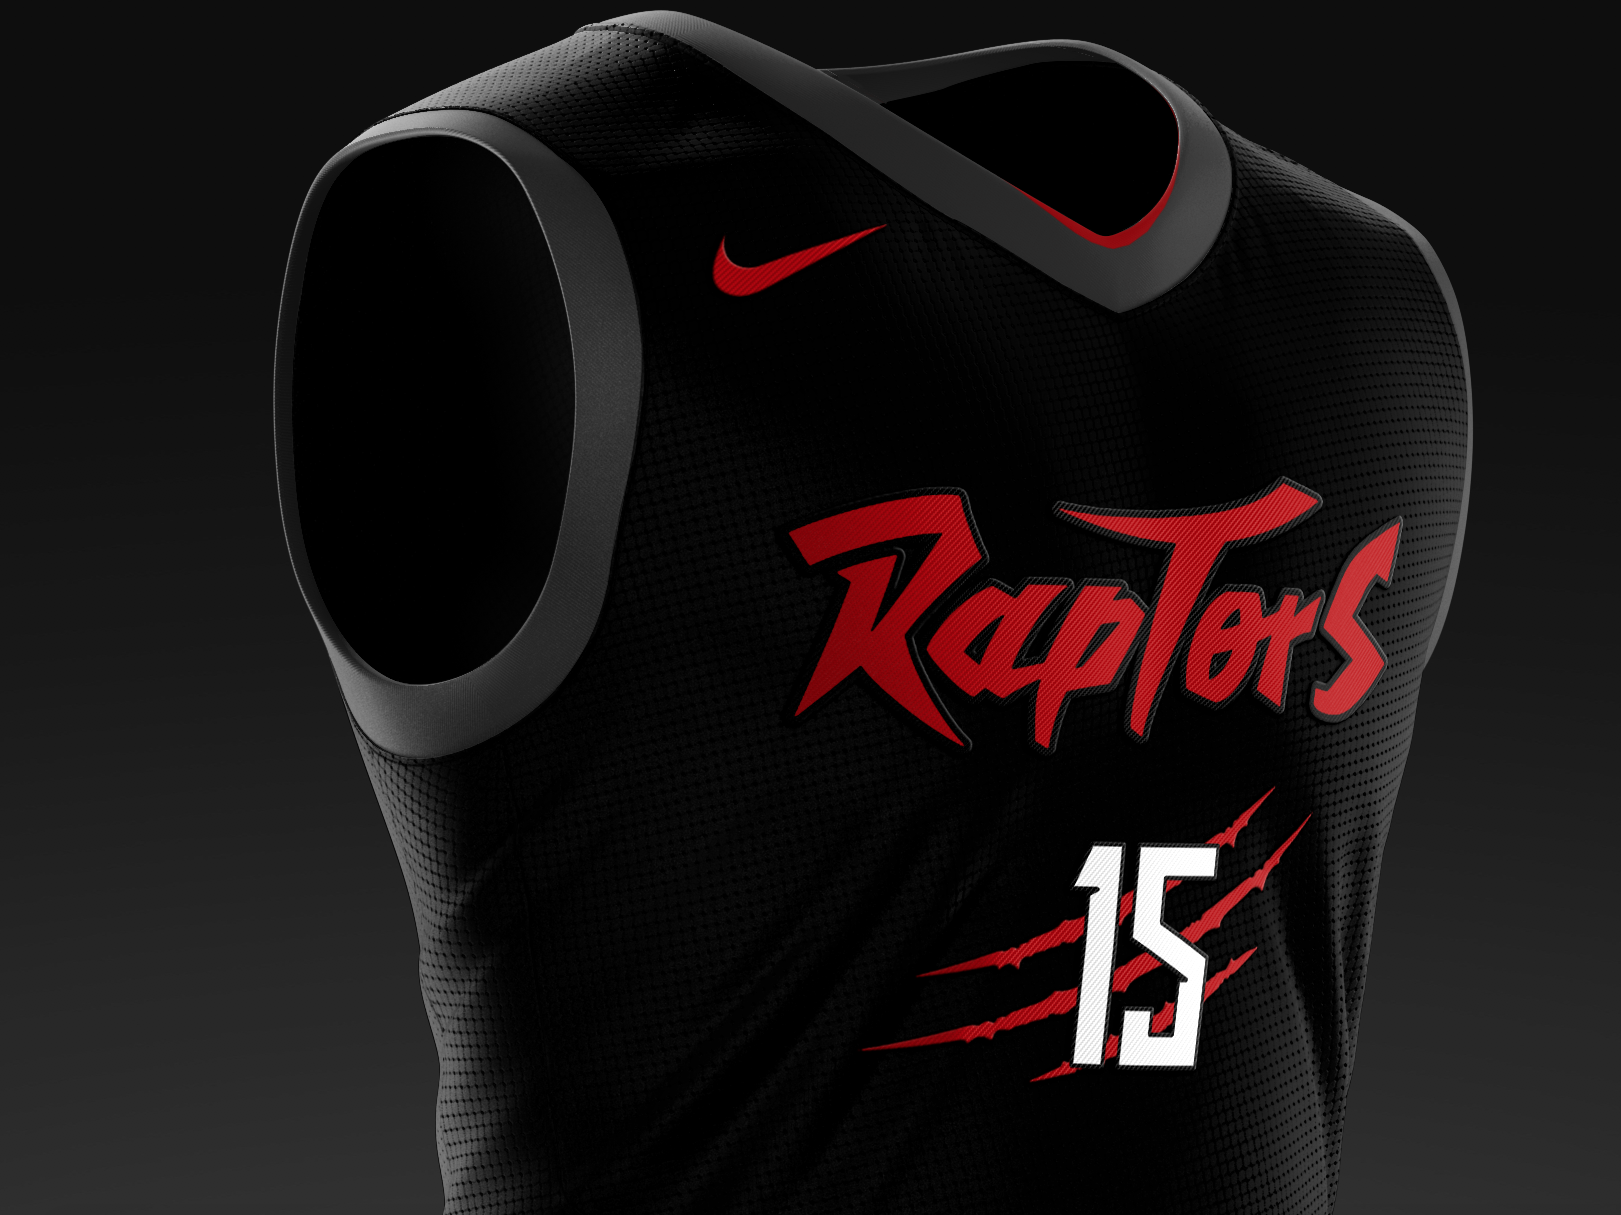 raptors new jersey 2019